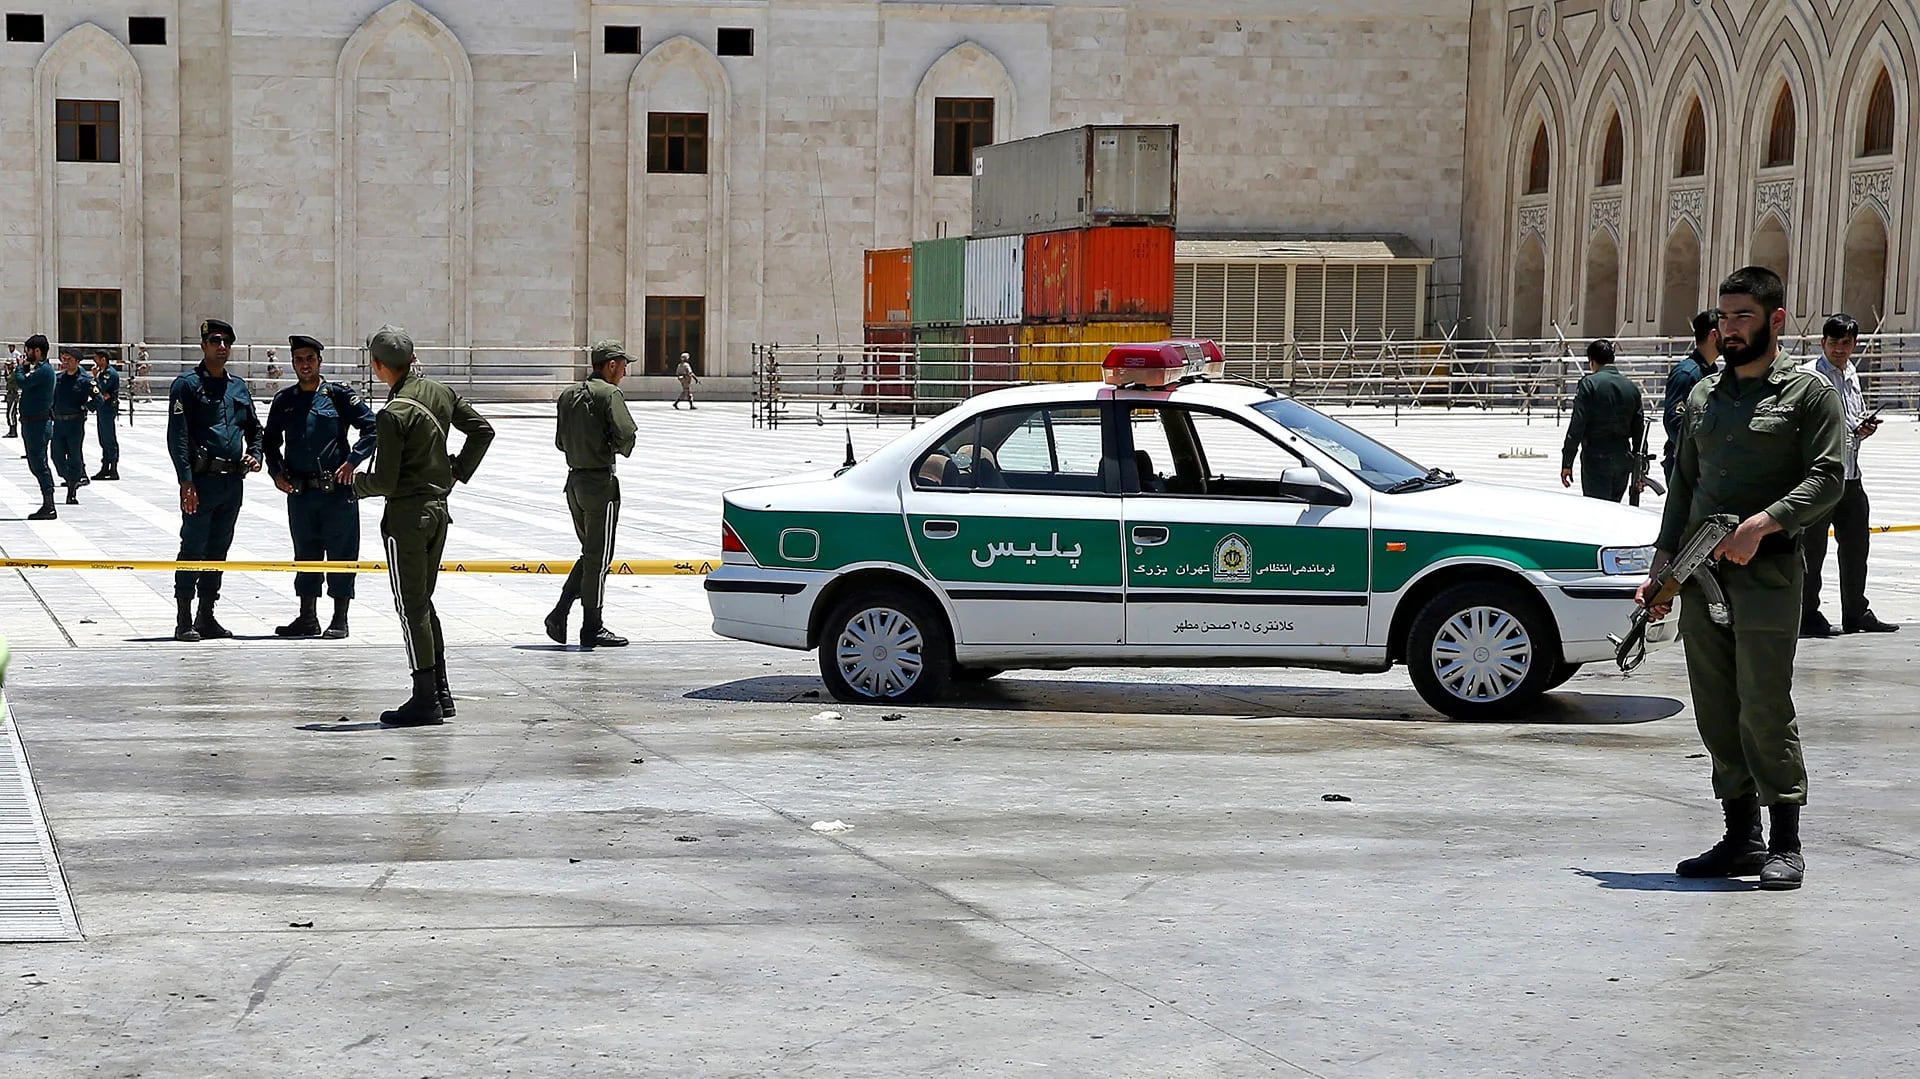 Oficiales de la policía controlan las cercanías del mausoleo del Ayatollah Khomeini (AP Photo/Ebrahim Noroozi)